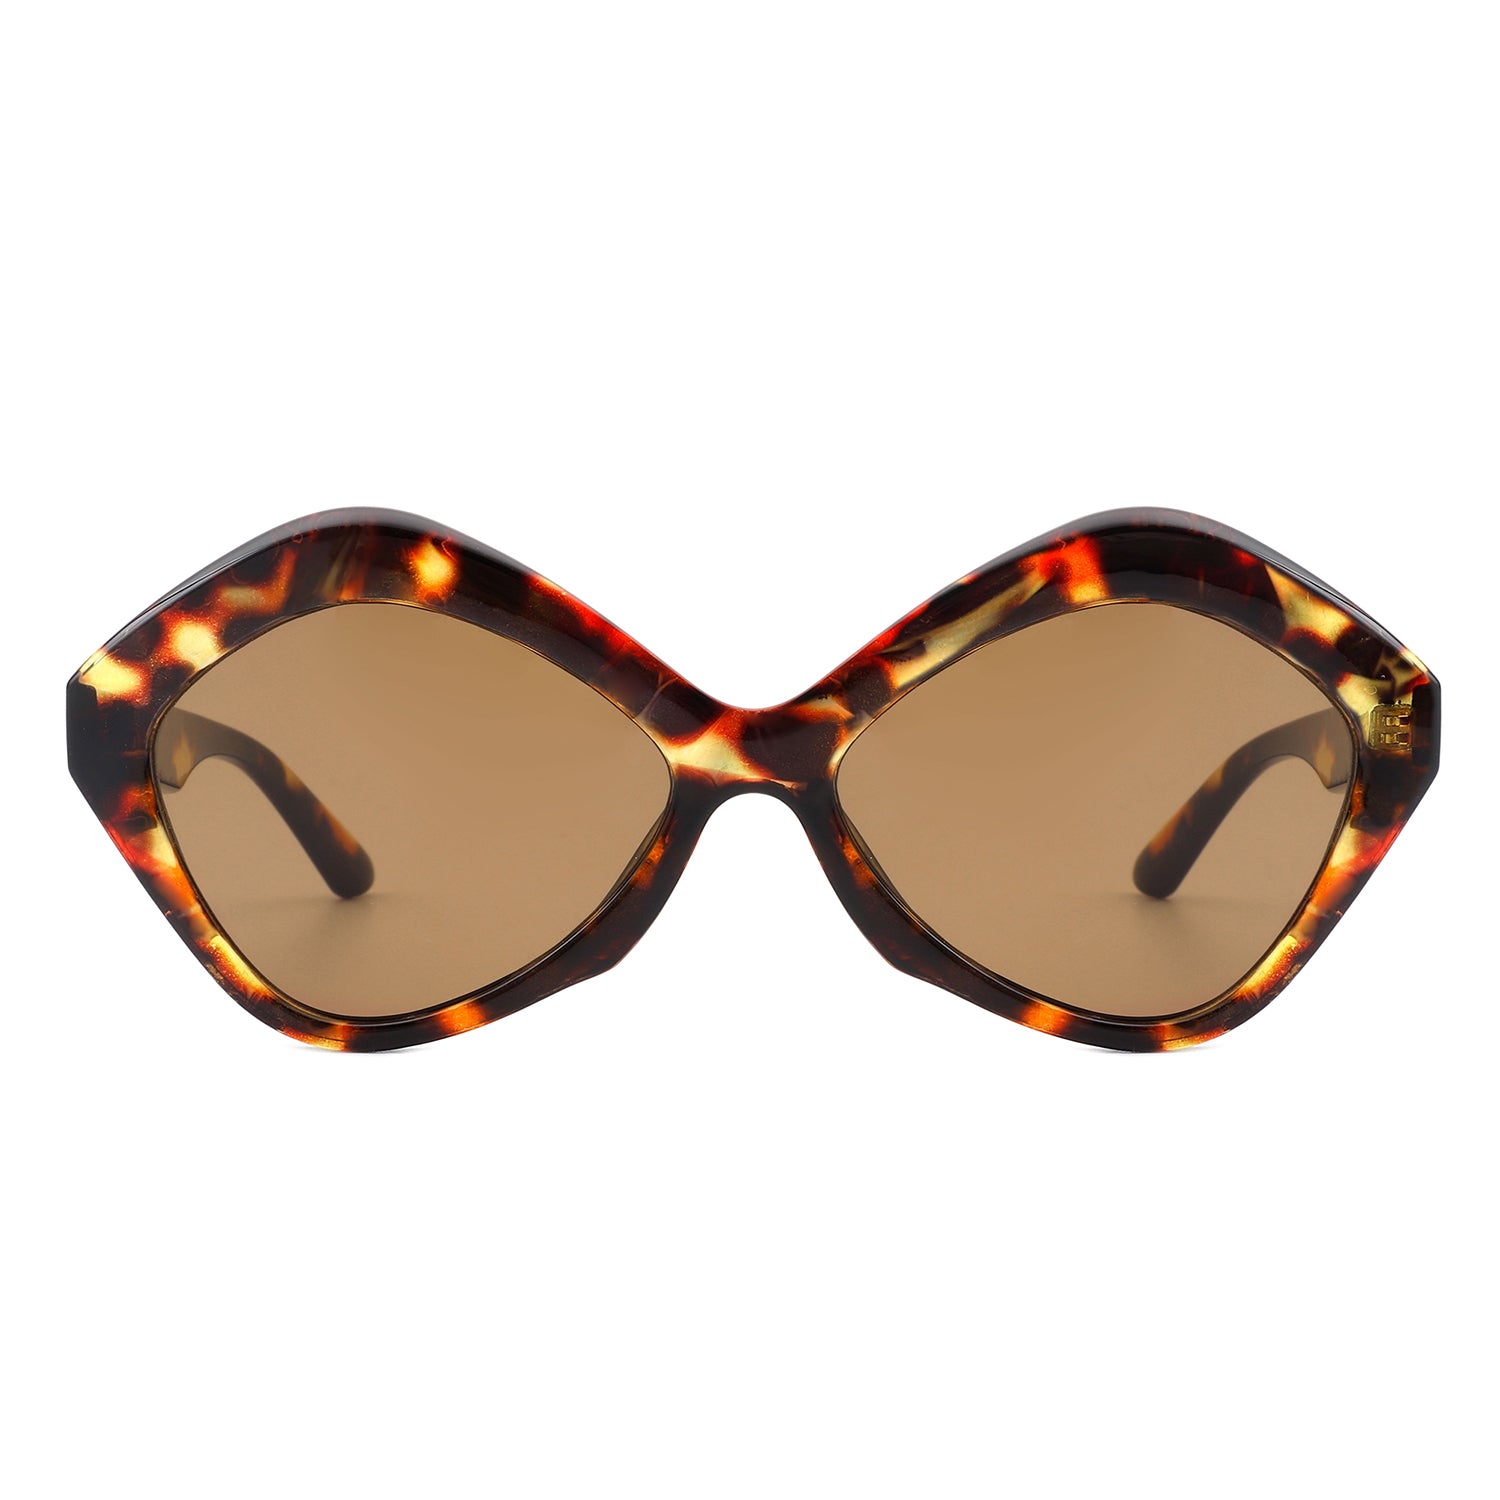 S1195 - Women Geometric Fashion Hexagonal Cat Eye Sunglasses